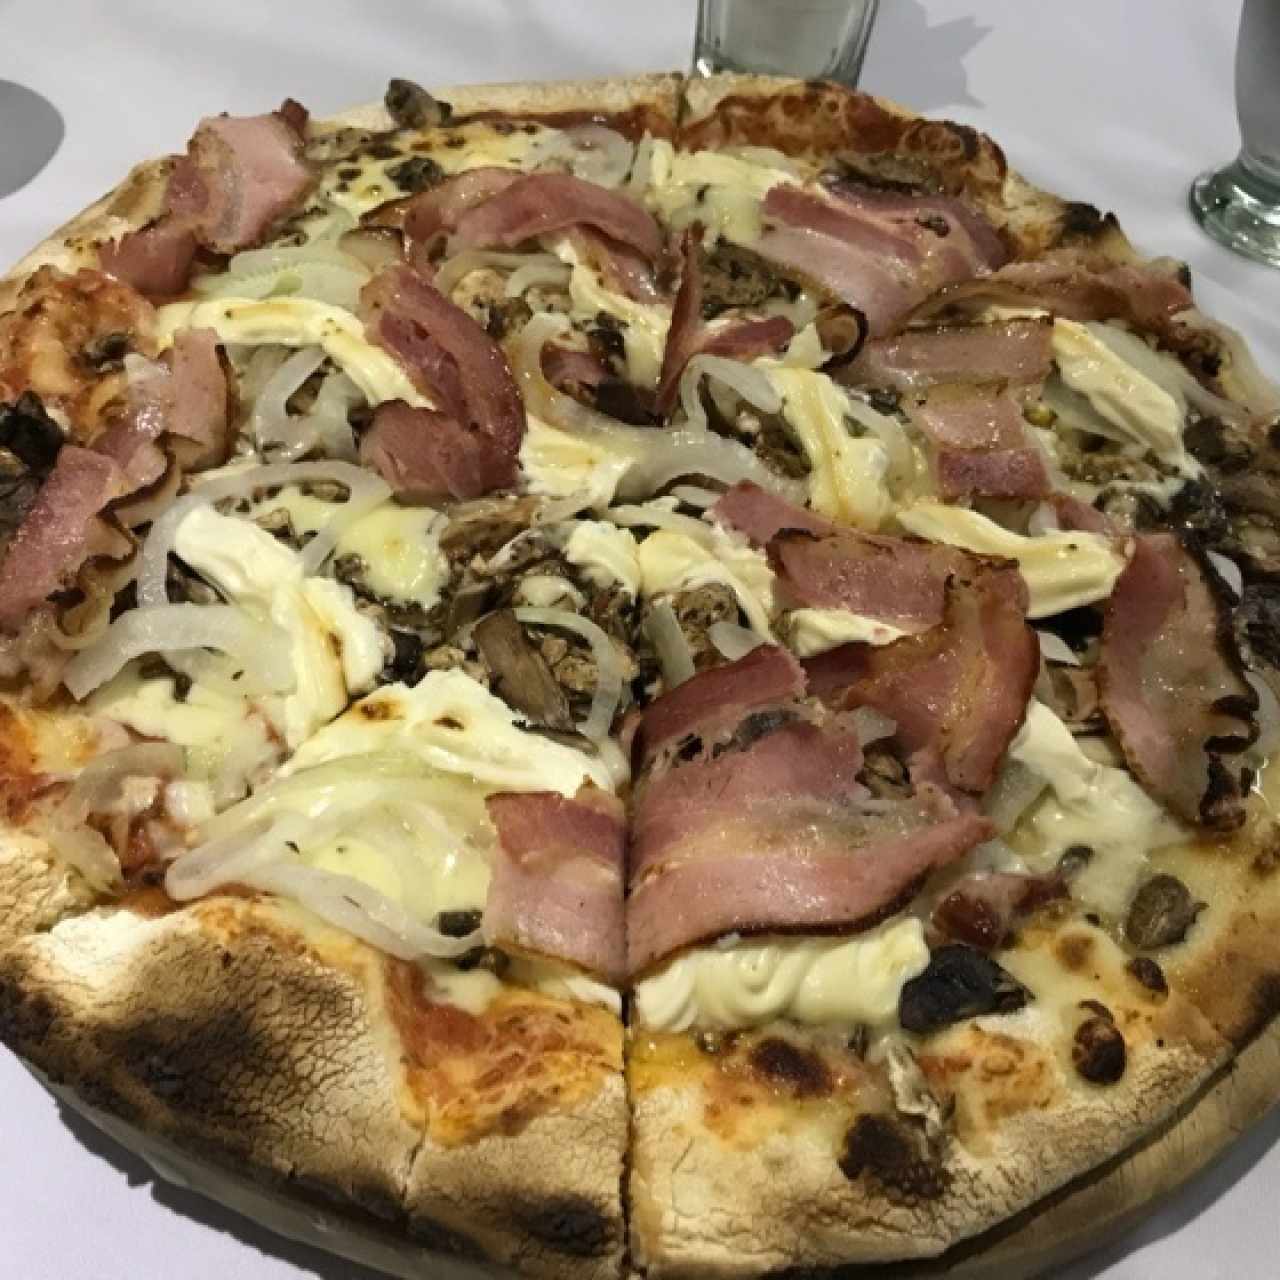 Vera Pizza